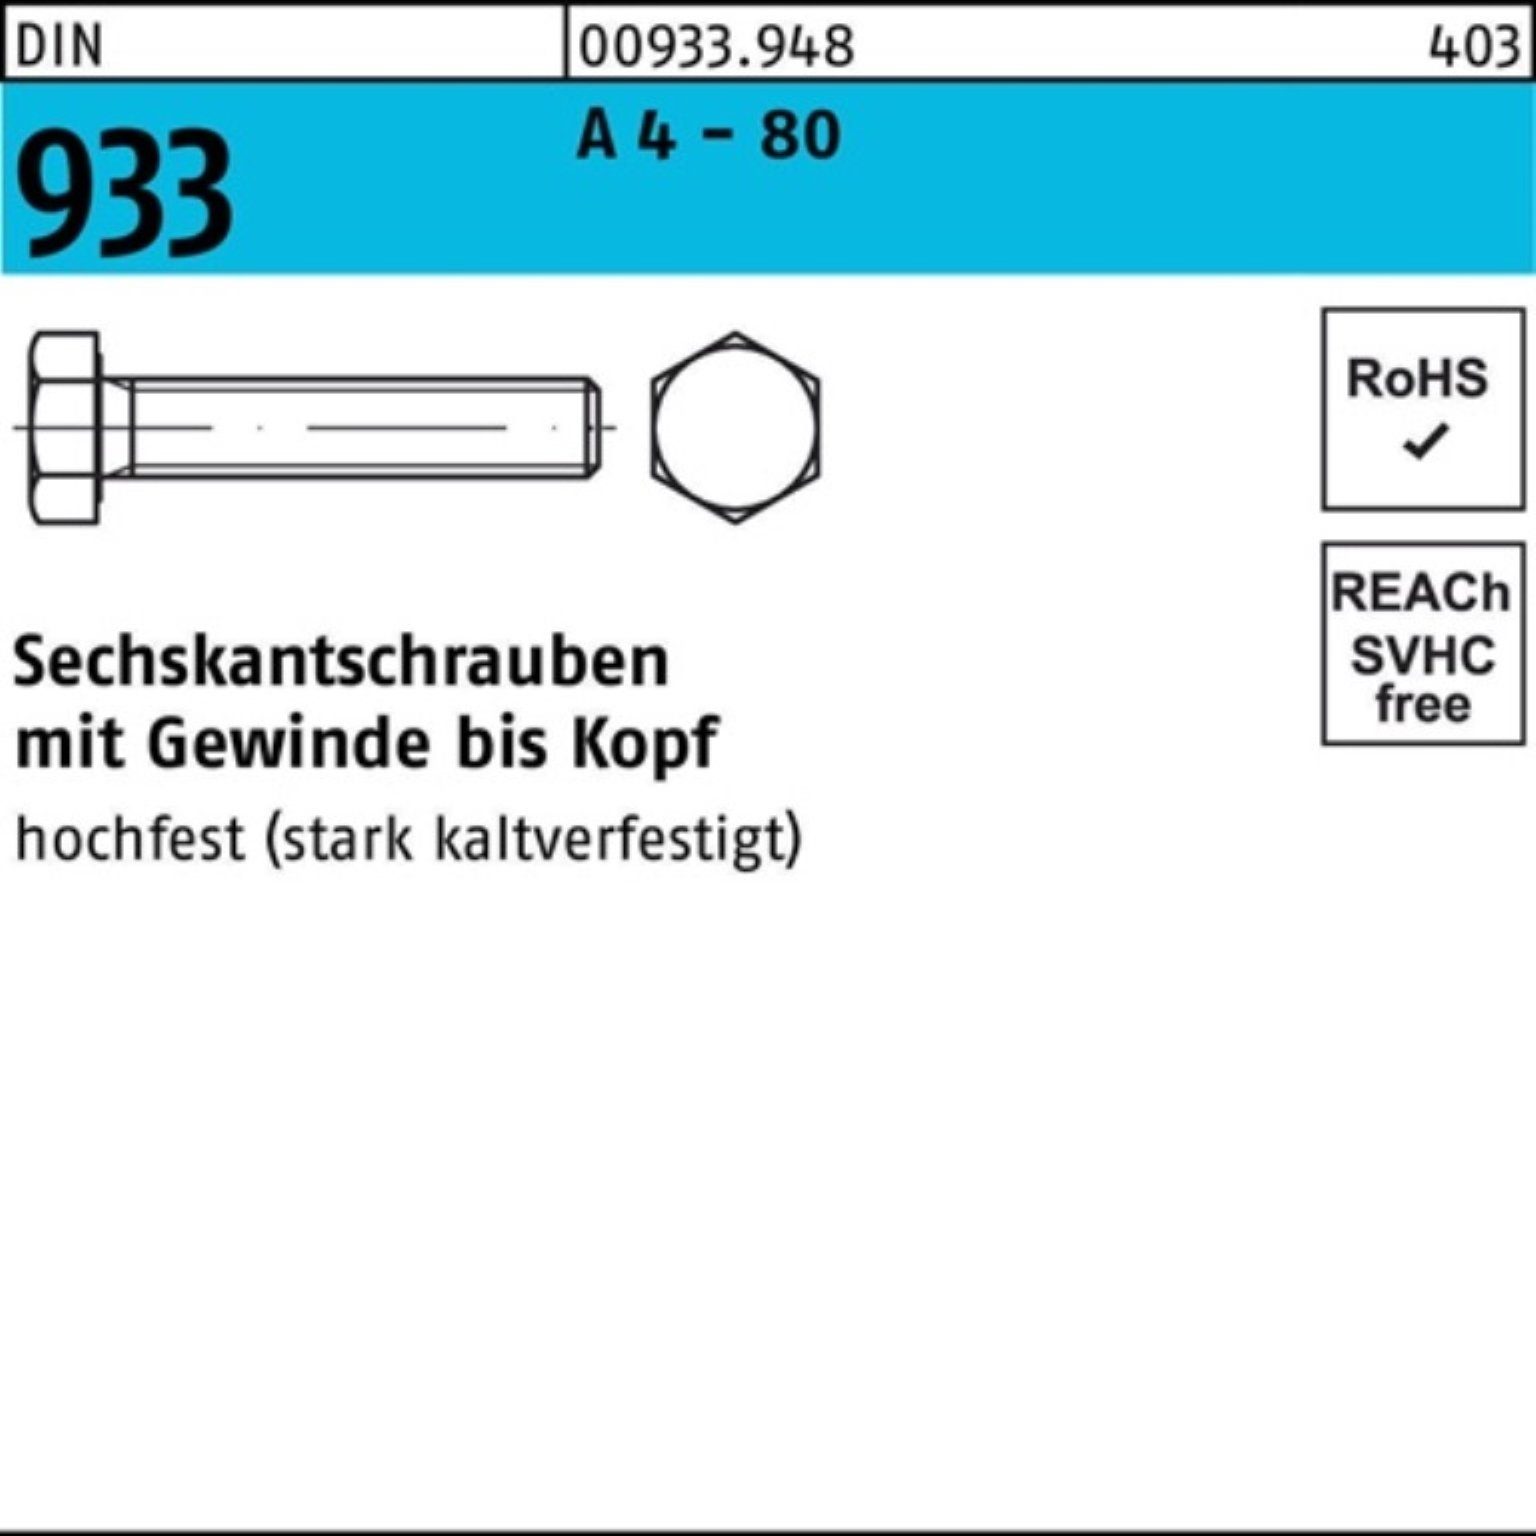 Reyher Sechskantschraube 100er Pack Sechskantschraube DIN 933 VG M16x 200 A 4 - 80 1 Stück DIN